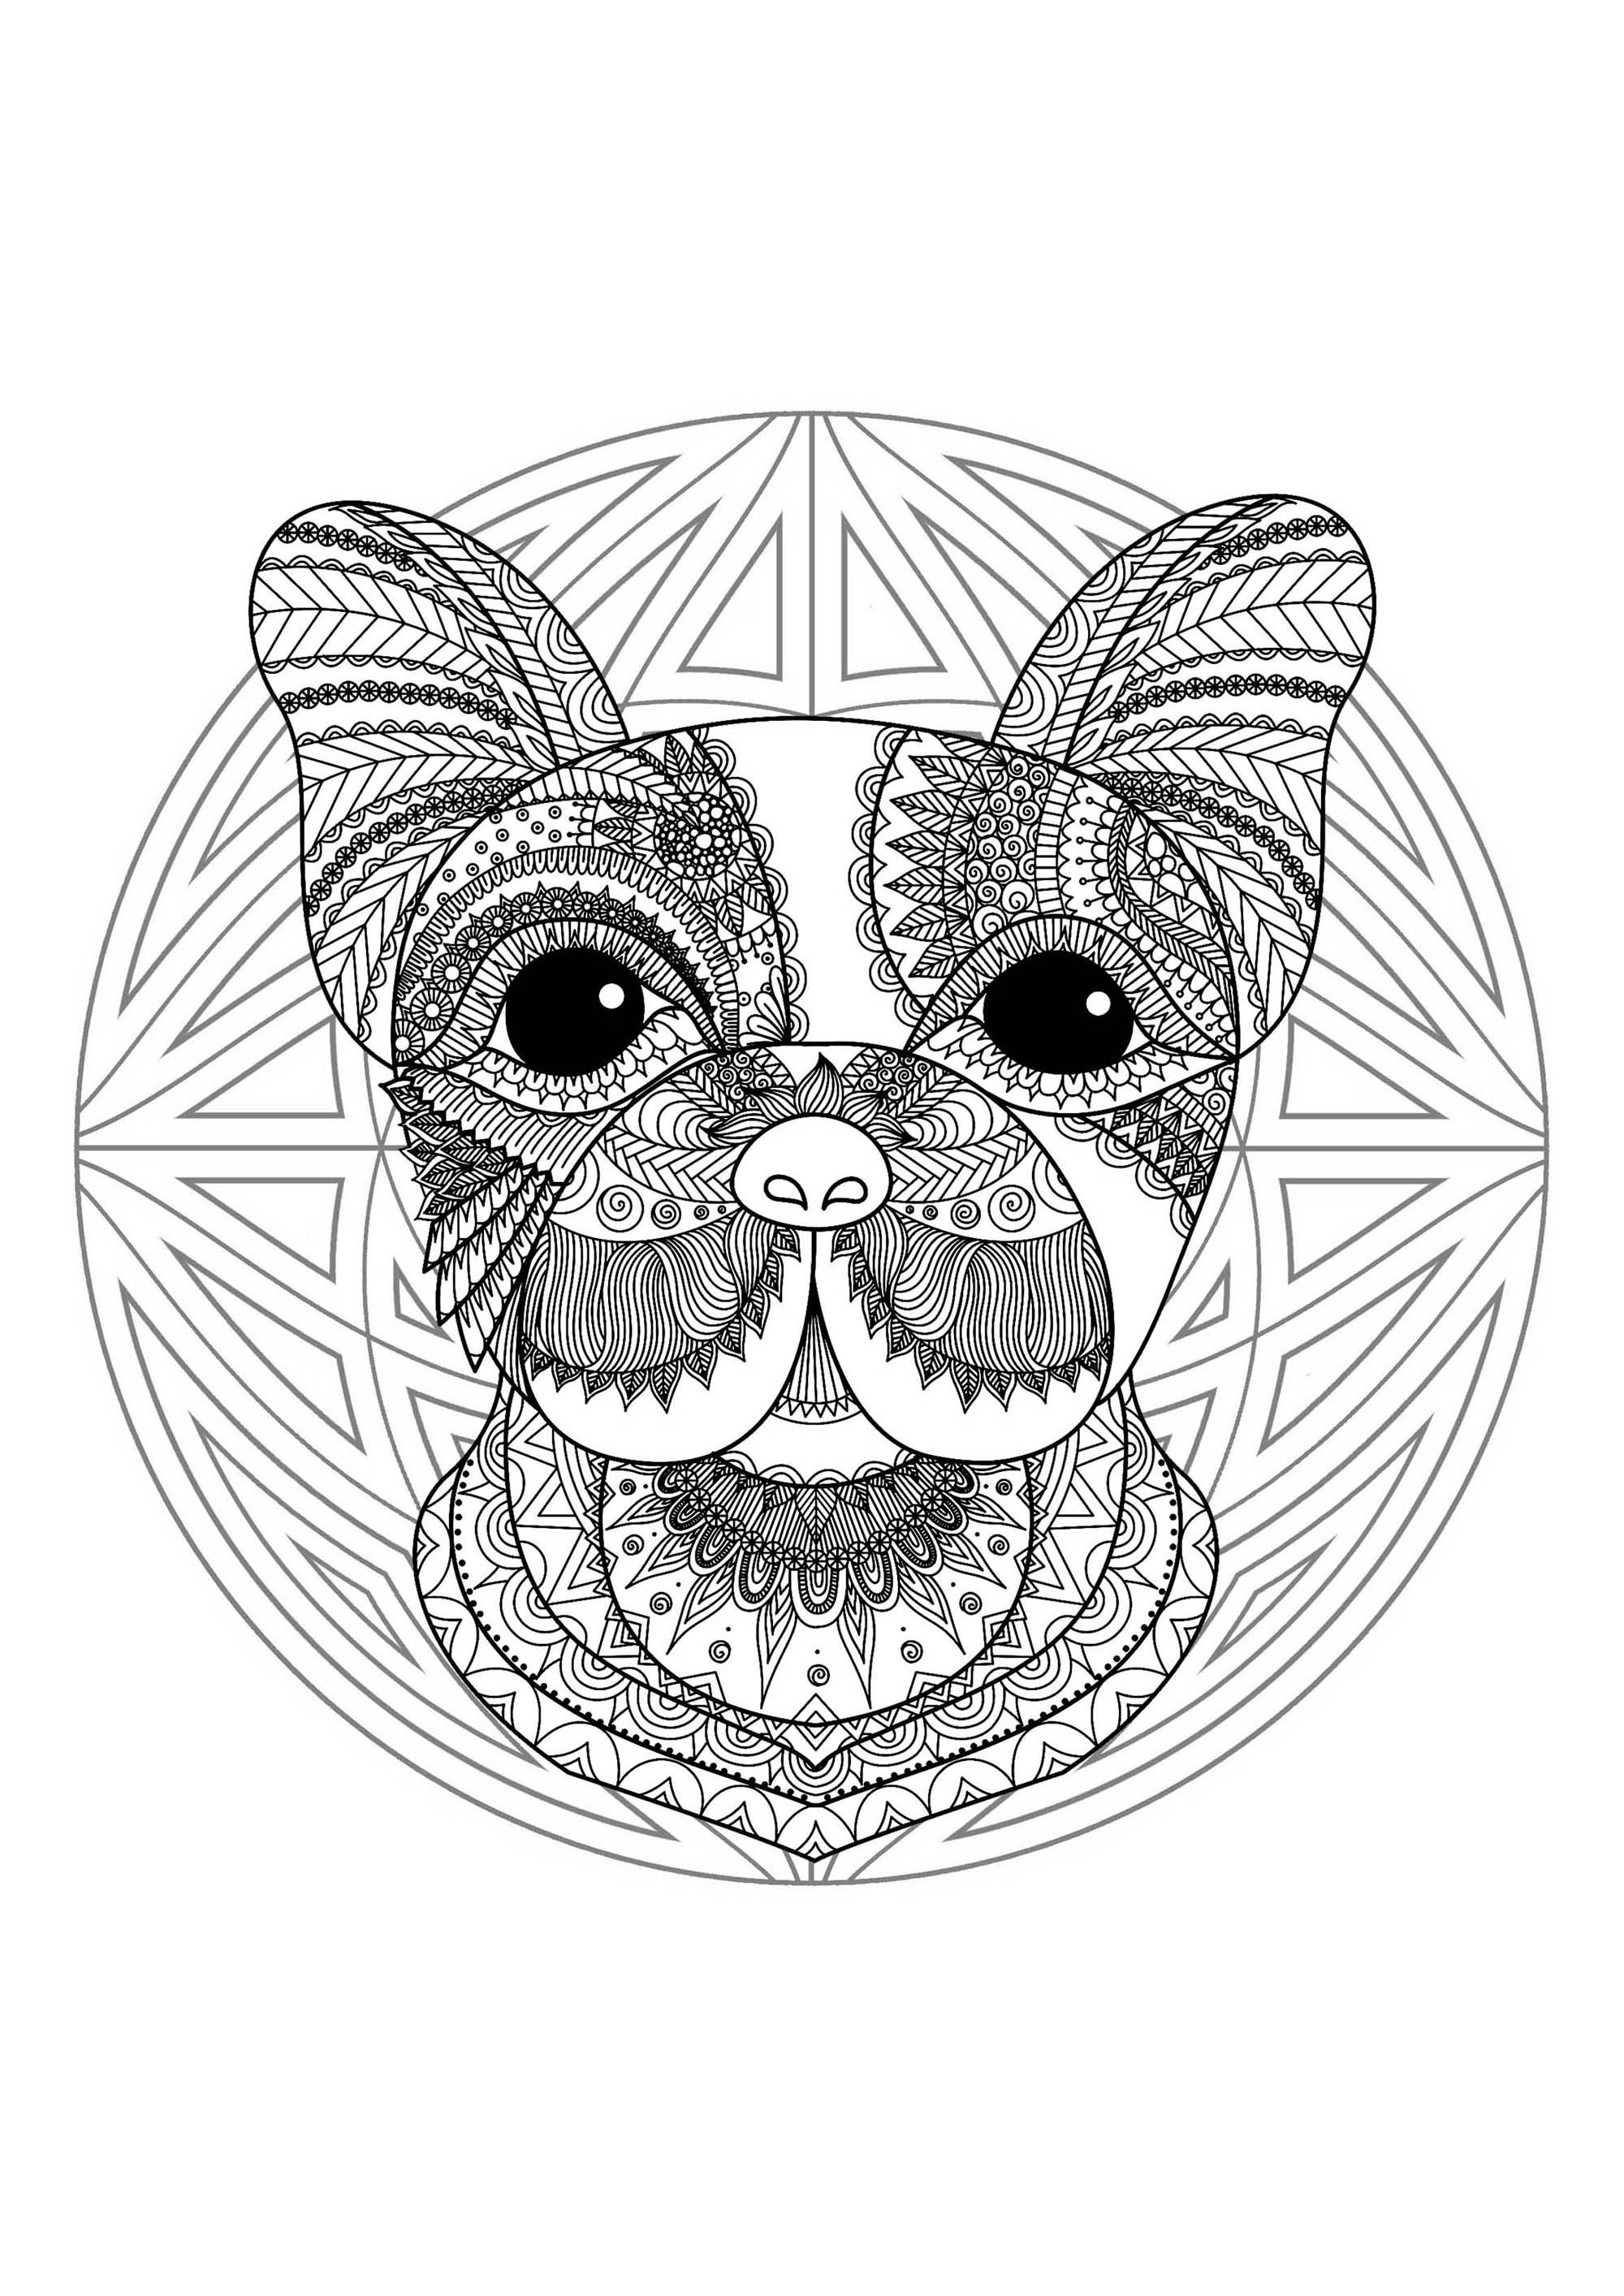 Mandala & Hundekopf. Halten Sie Ihre Filz- und Bleistifte bereit, um die Farbgestaltung dieses Mandalas voller kleiner Details und ineinandergreifender Bereiche vorzunehmen.